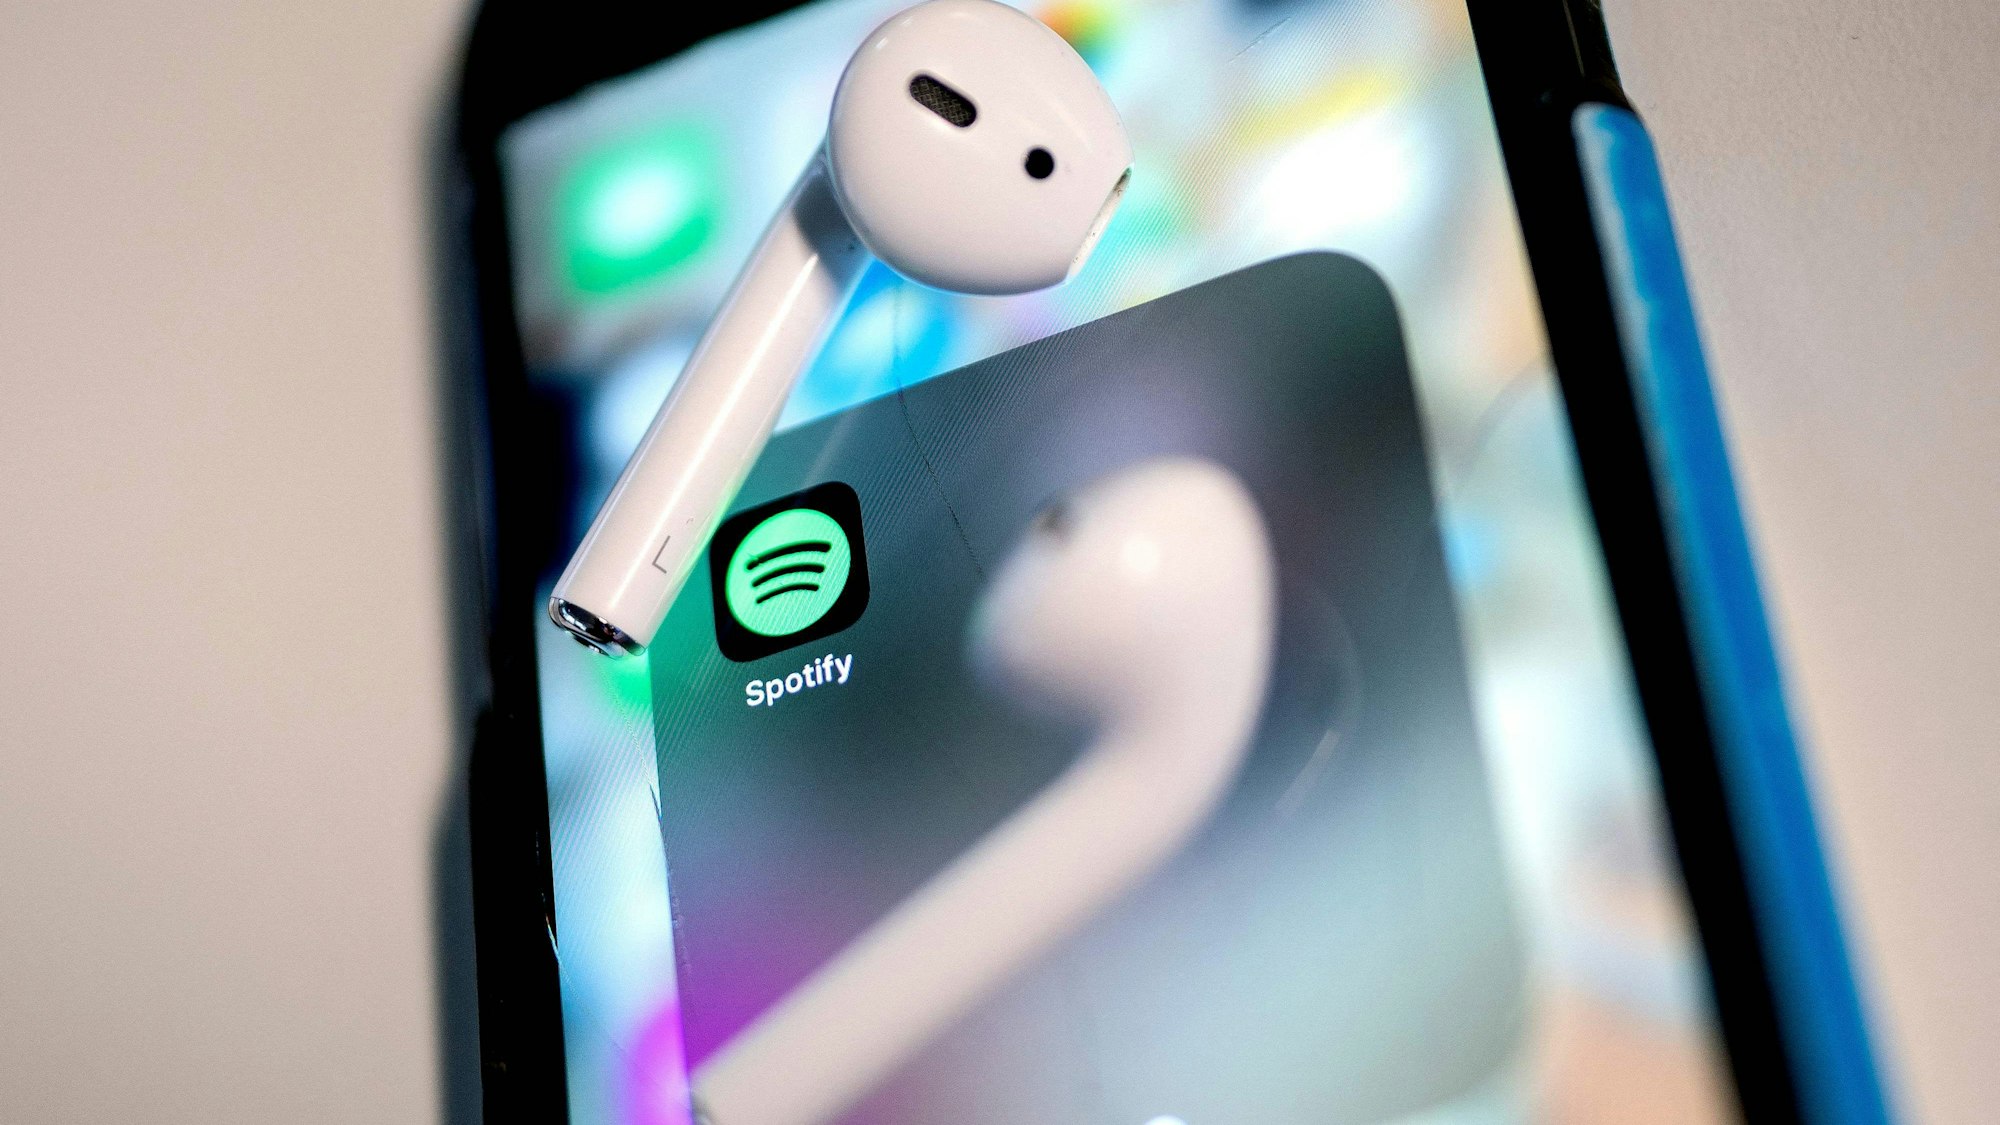 Auf dem Bild ist das Icon der Spotify-App auf einem Smartphone zu sehen. Auf dem Bildschirm liegen zwei kabellose Ohrhörer.